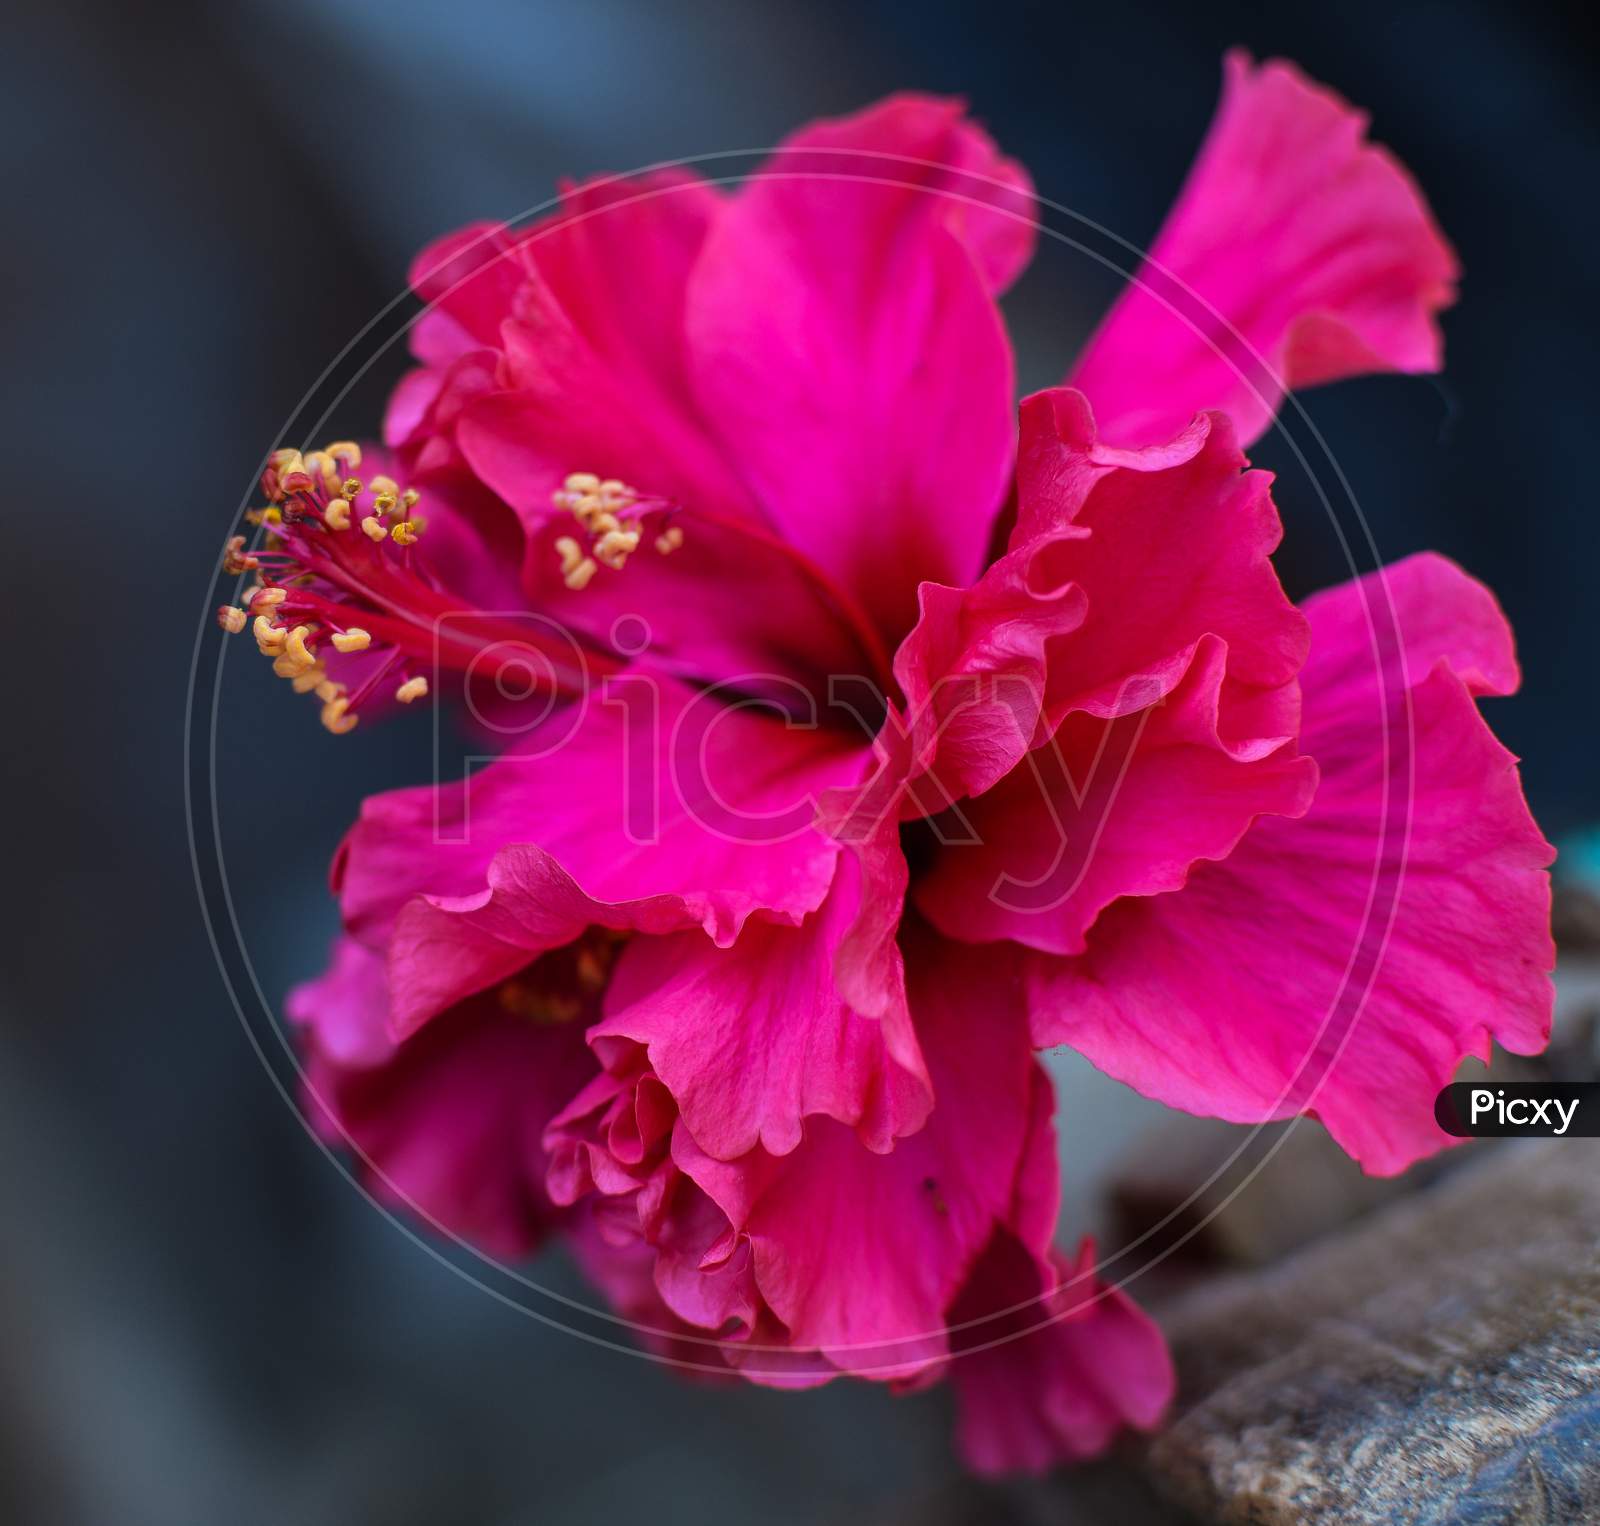 Chaina Rose Pink Flower On Dark Background